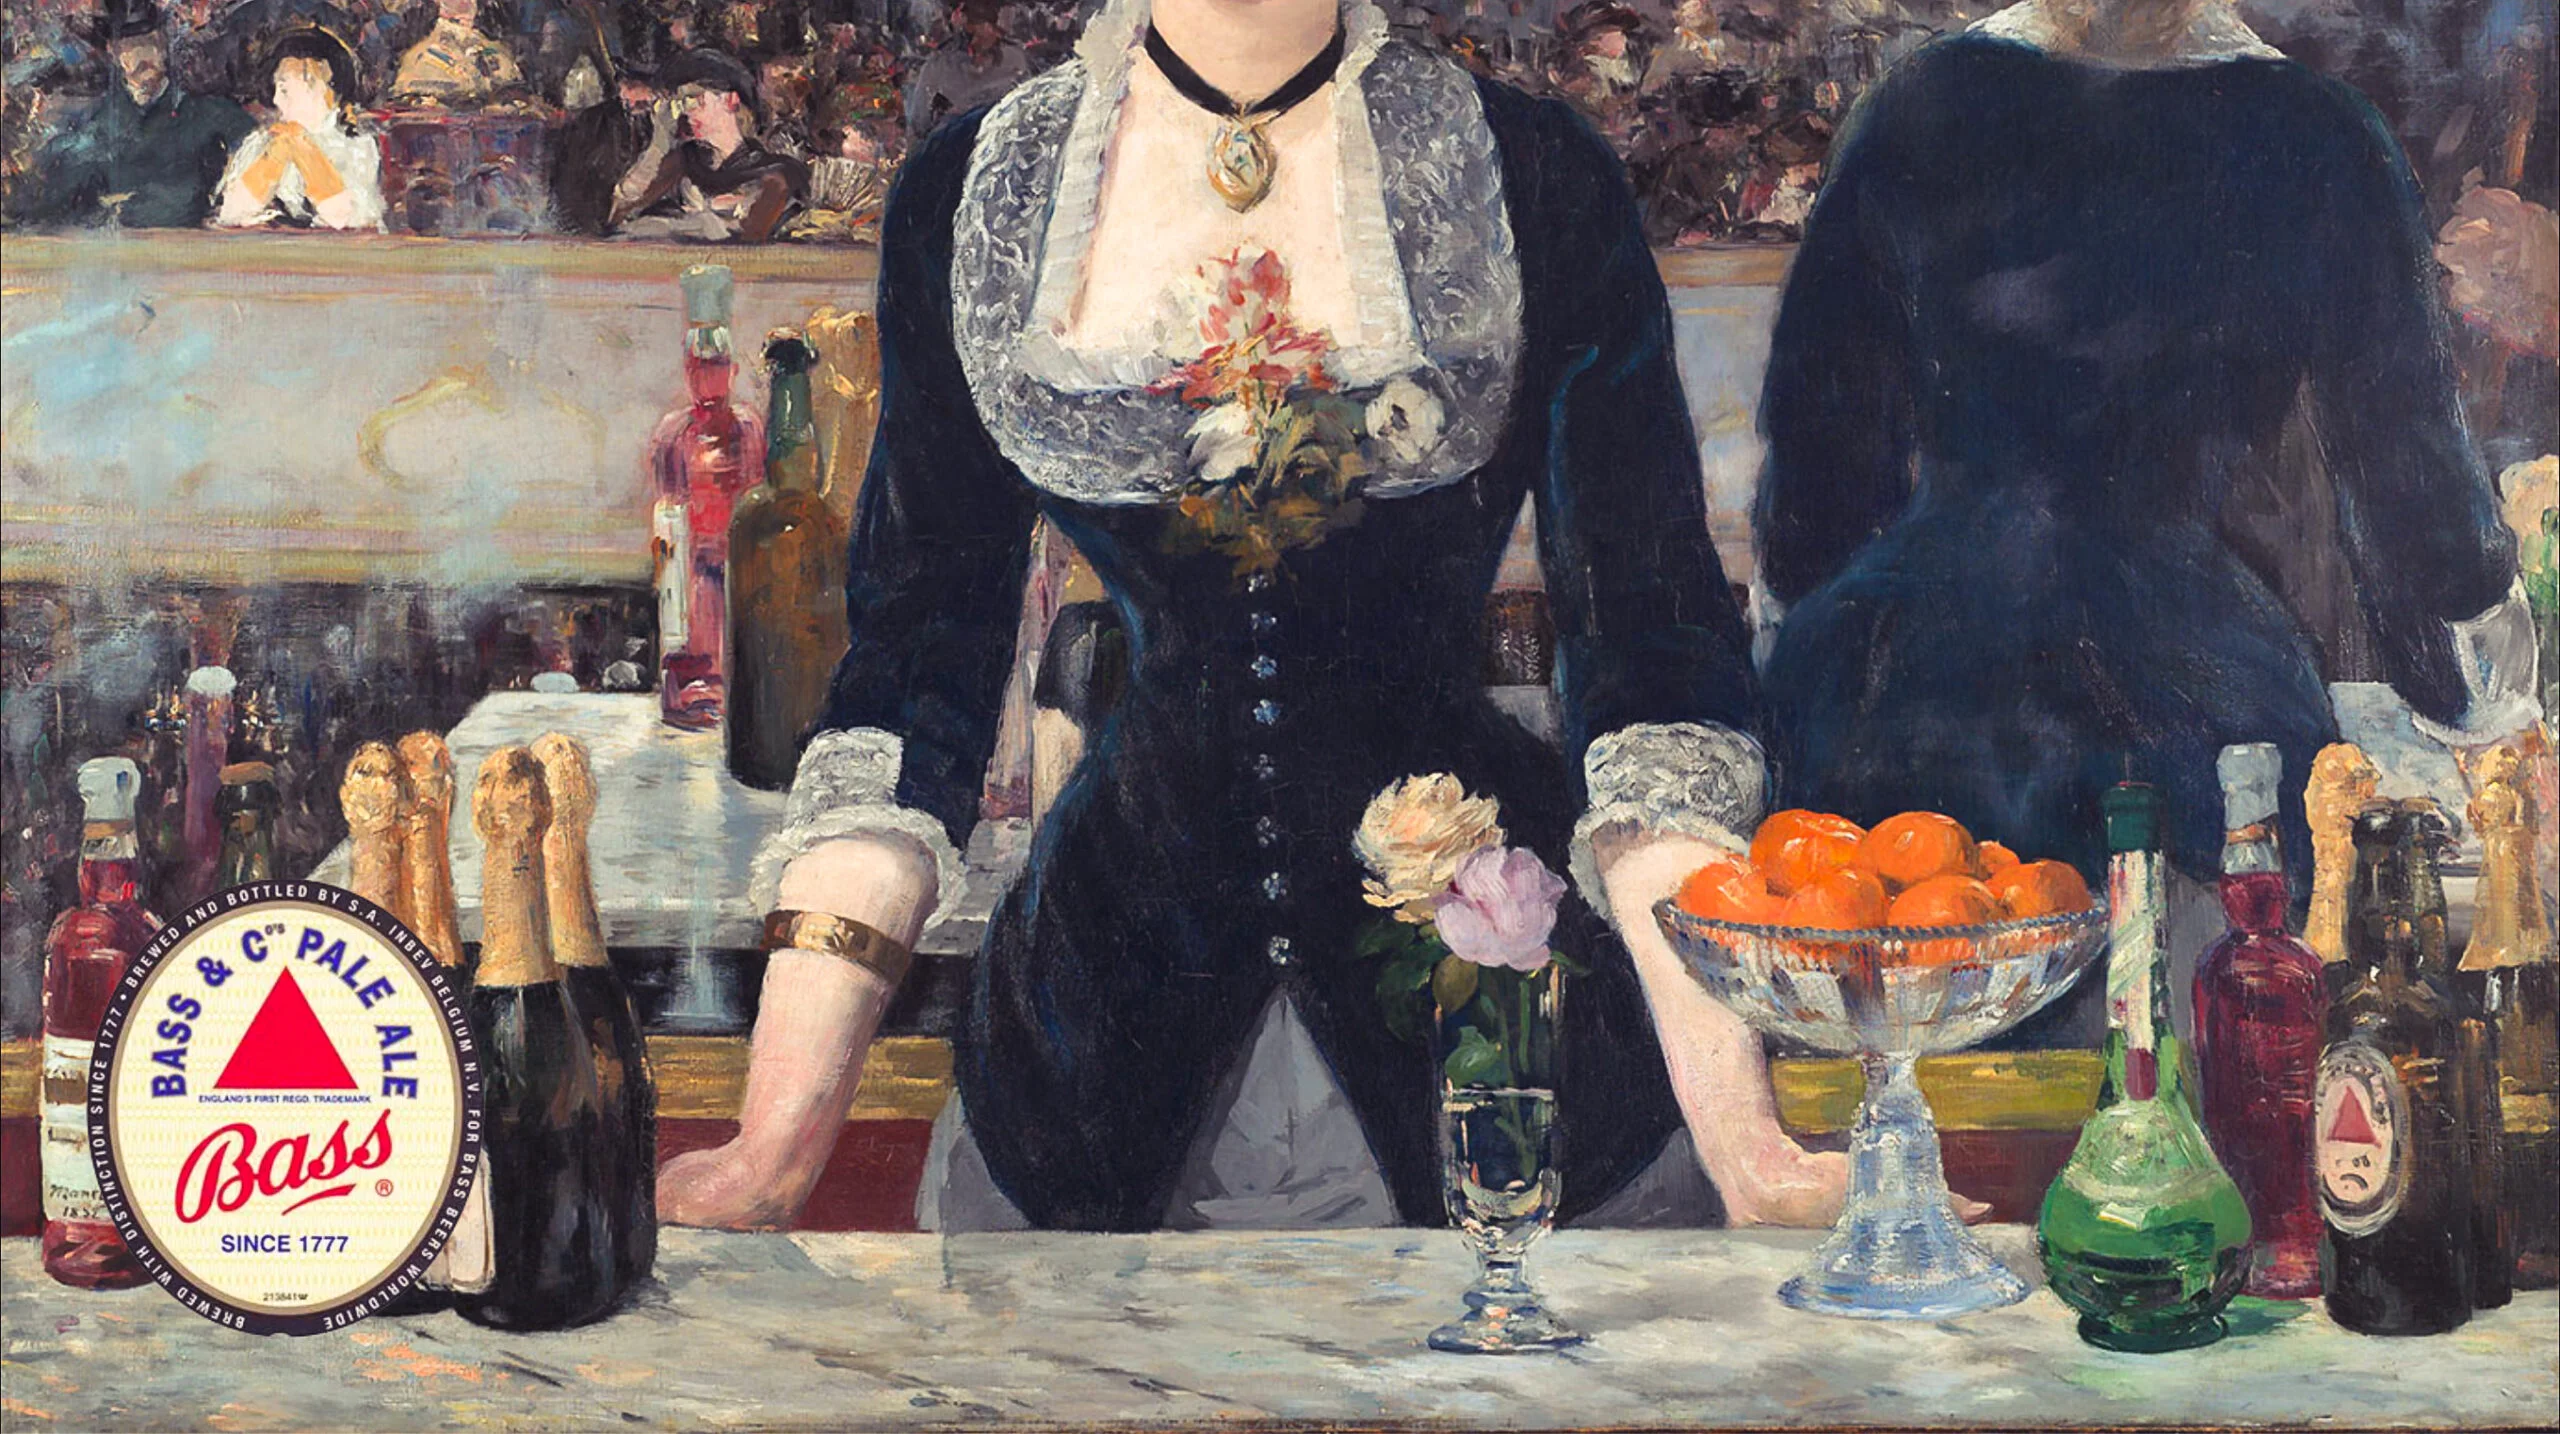 1881 painting by French artist Edouard Manet Un bar aux Folies Bergère